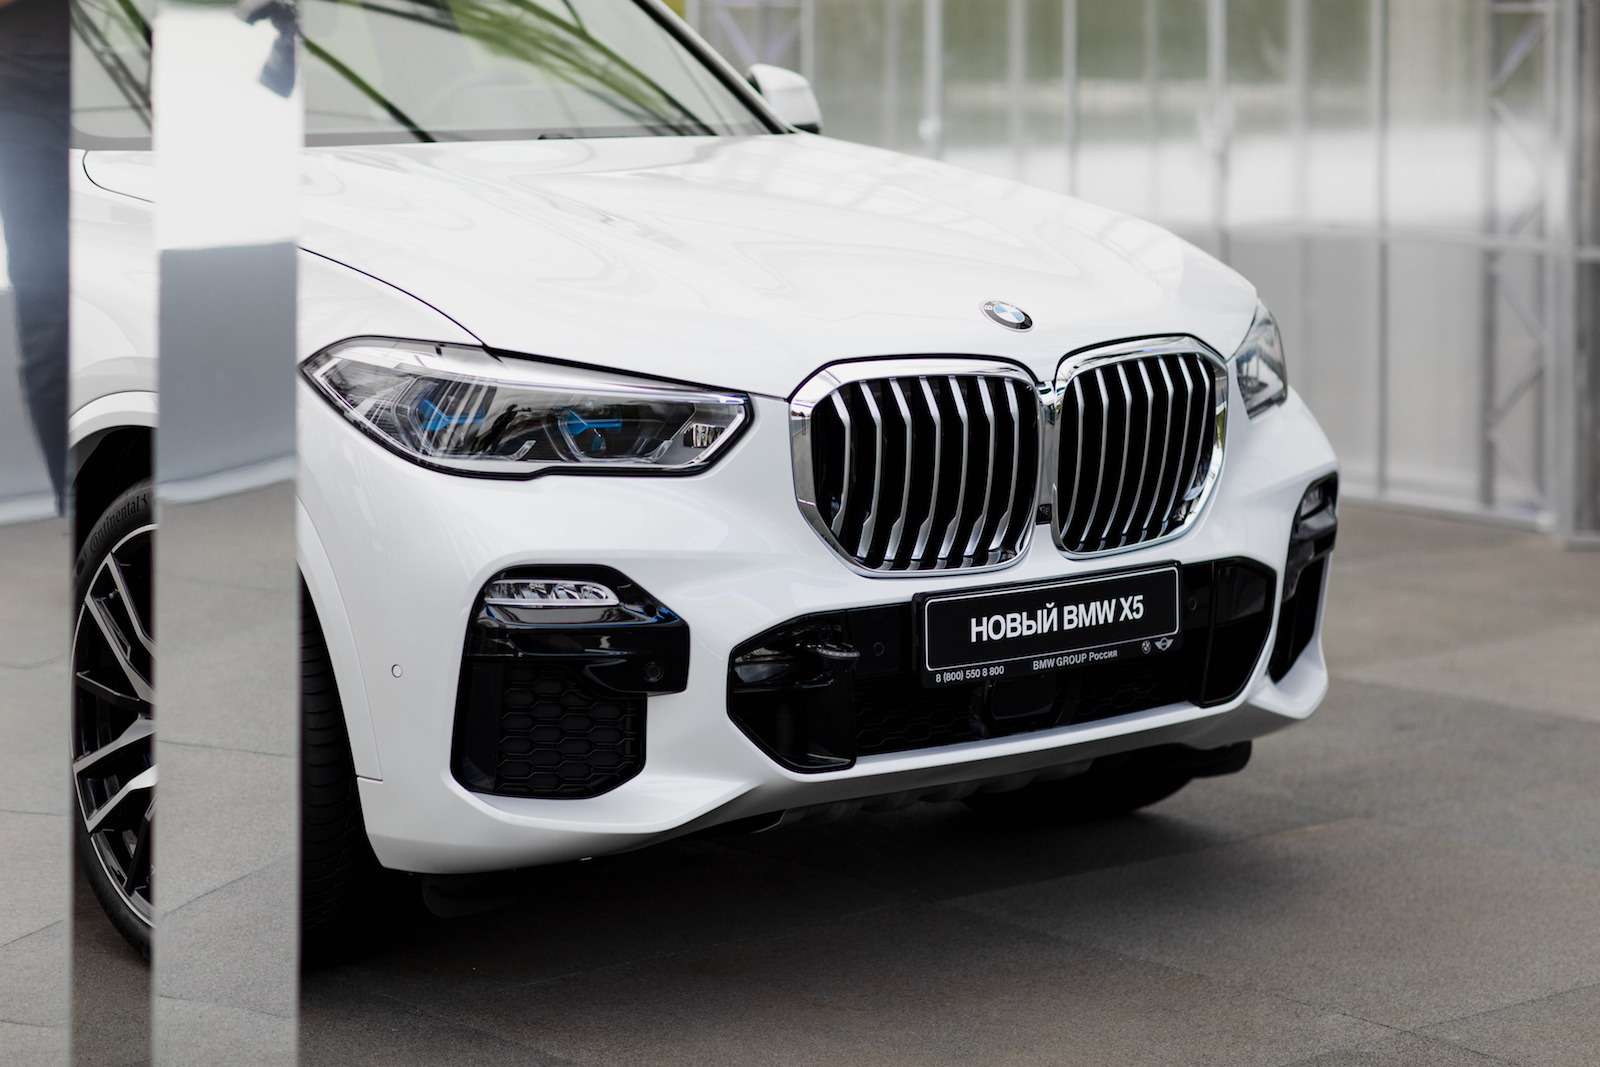 Абсолютно новый BMW X5 всплыл в Москве. Задолго до официальной премьеры! — фото 889827